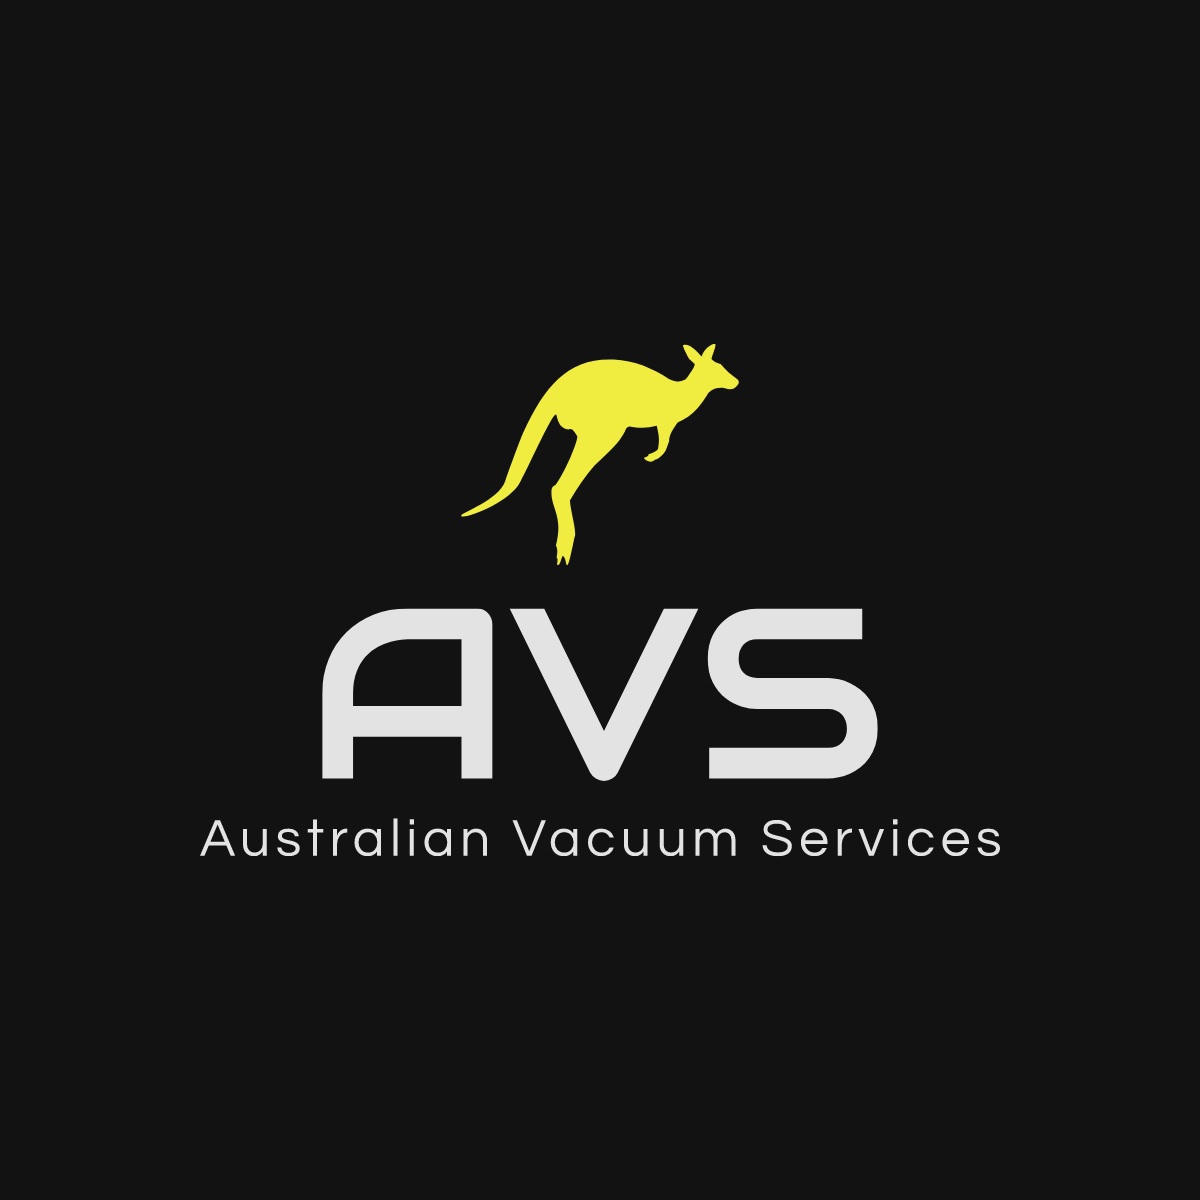 Australian Vacuum Services